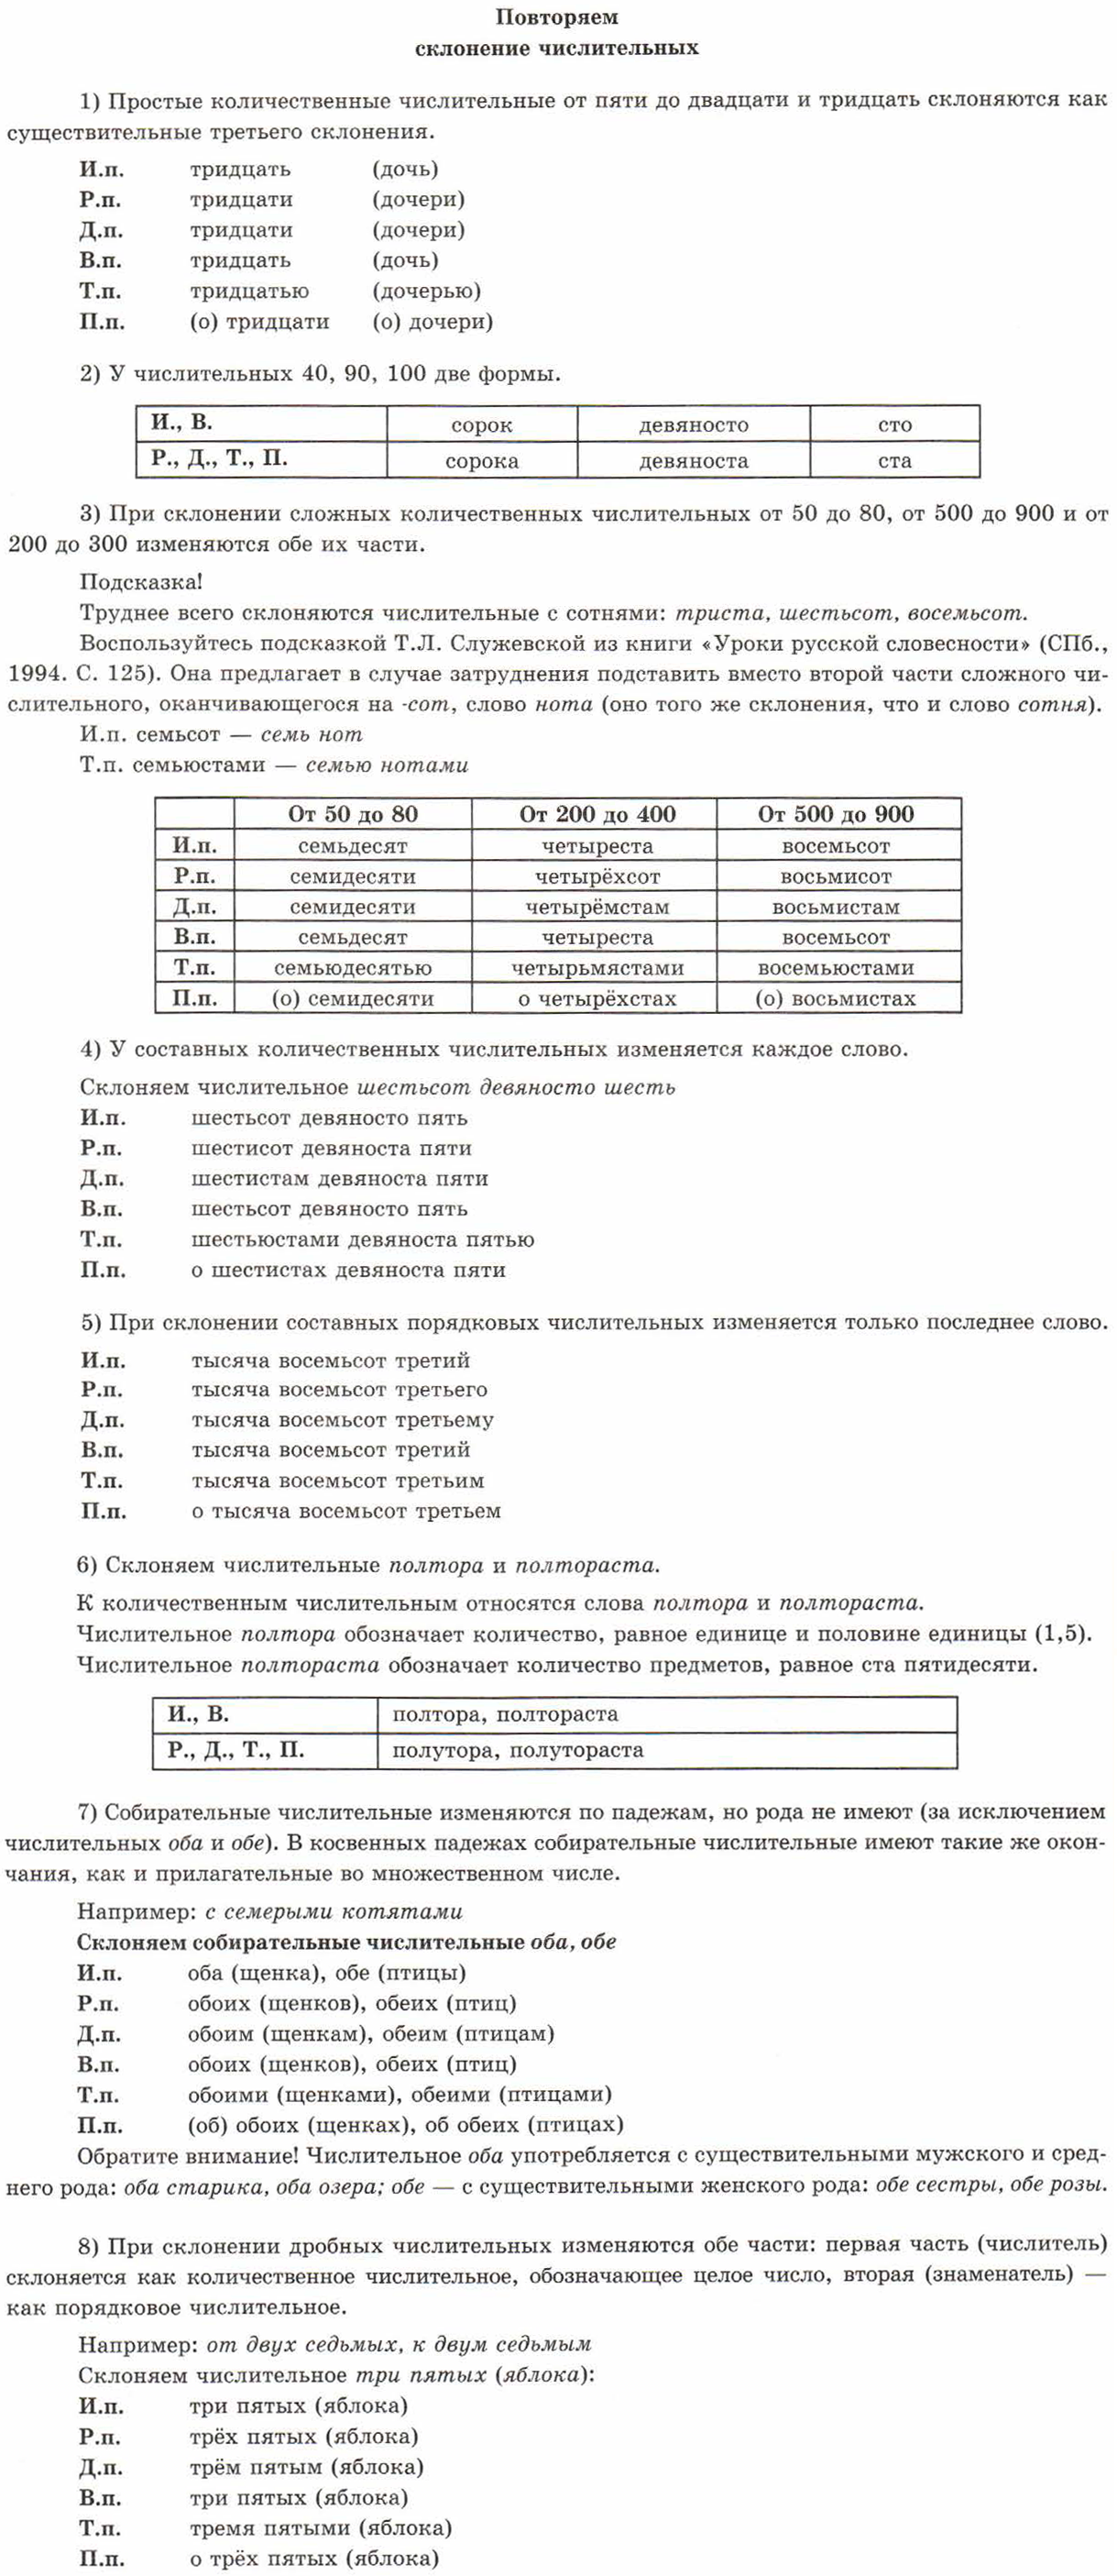 Итоговое собеседование по русскому языку 2020. | Вагайская средняя  общеобразовательная школа